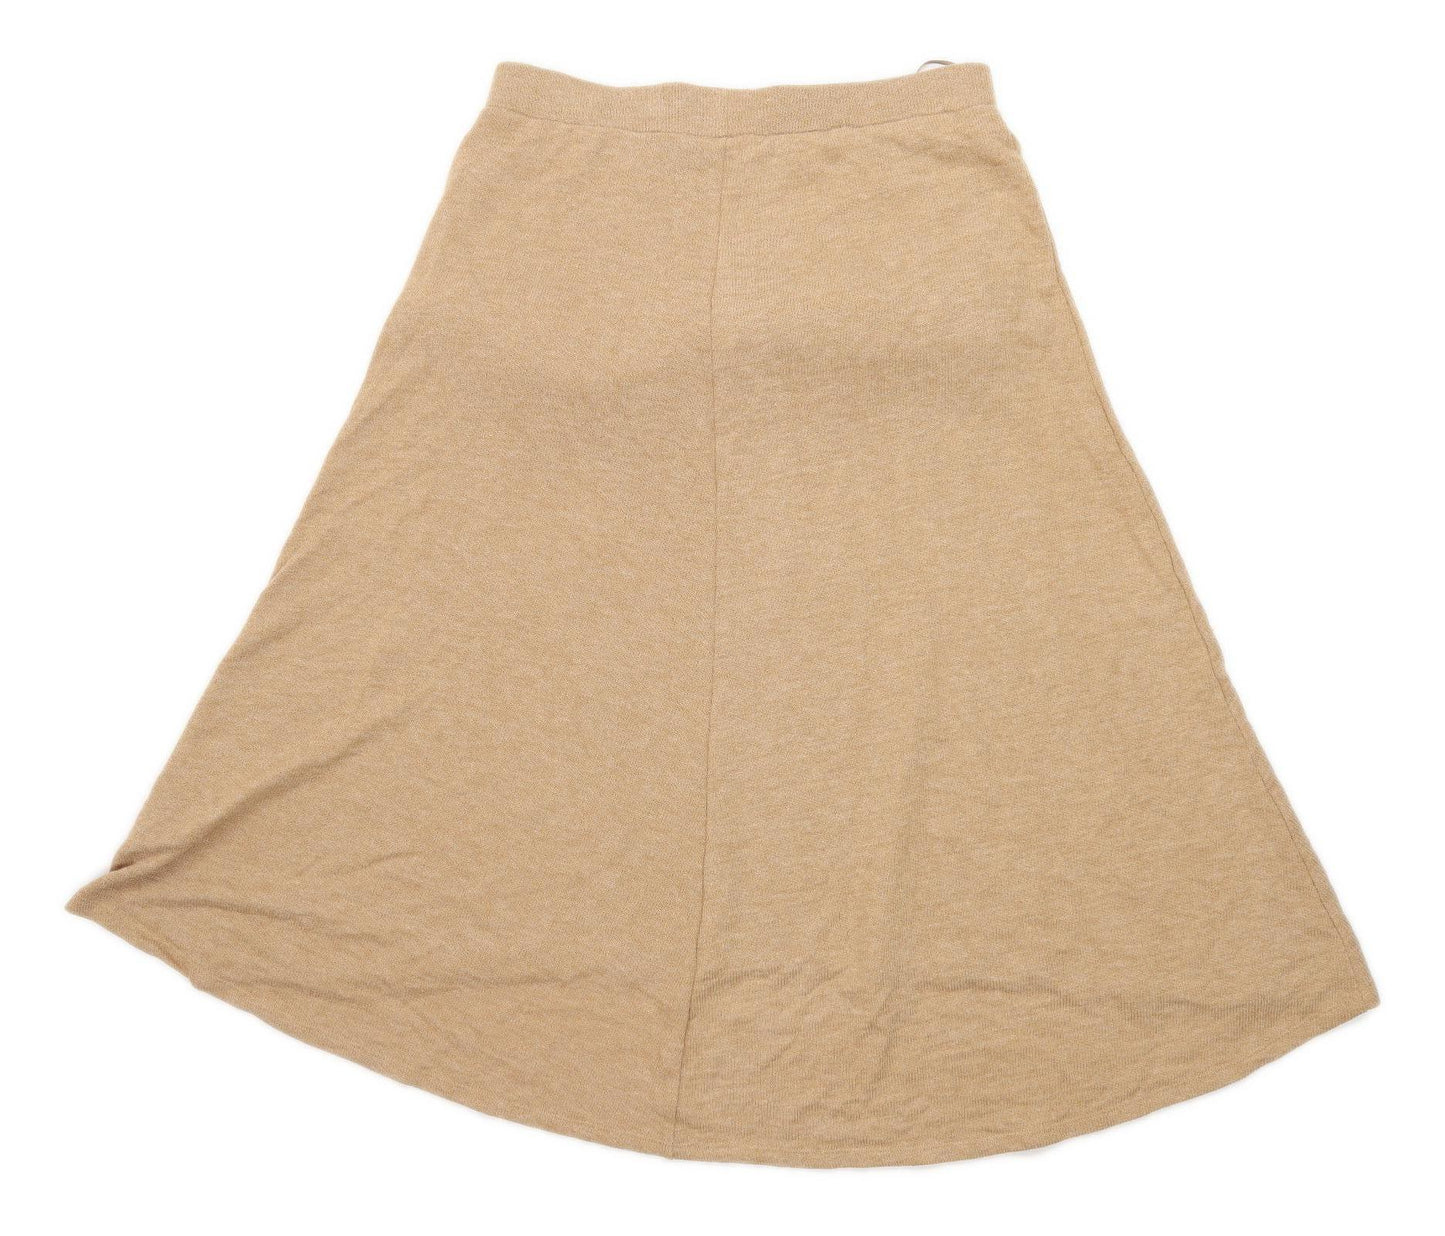 Marks & Spencer Womens Size 14 Brown Skirt (Regular)